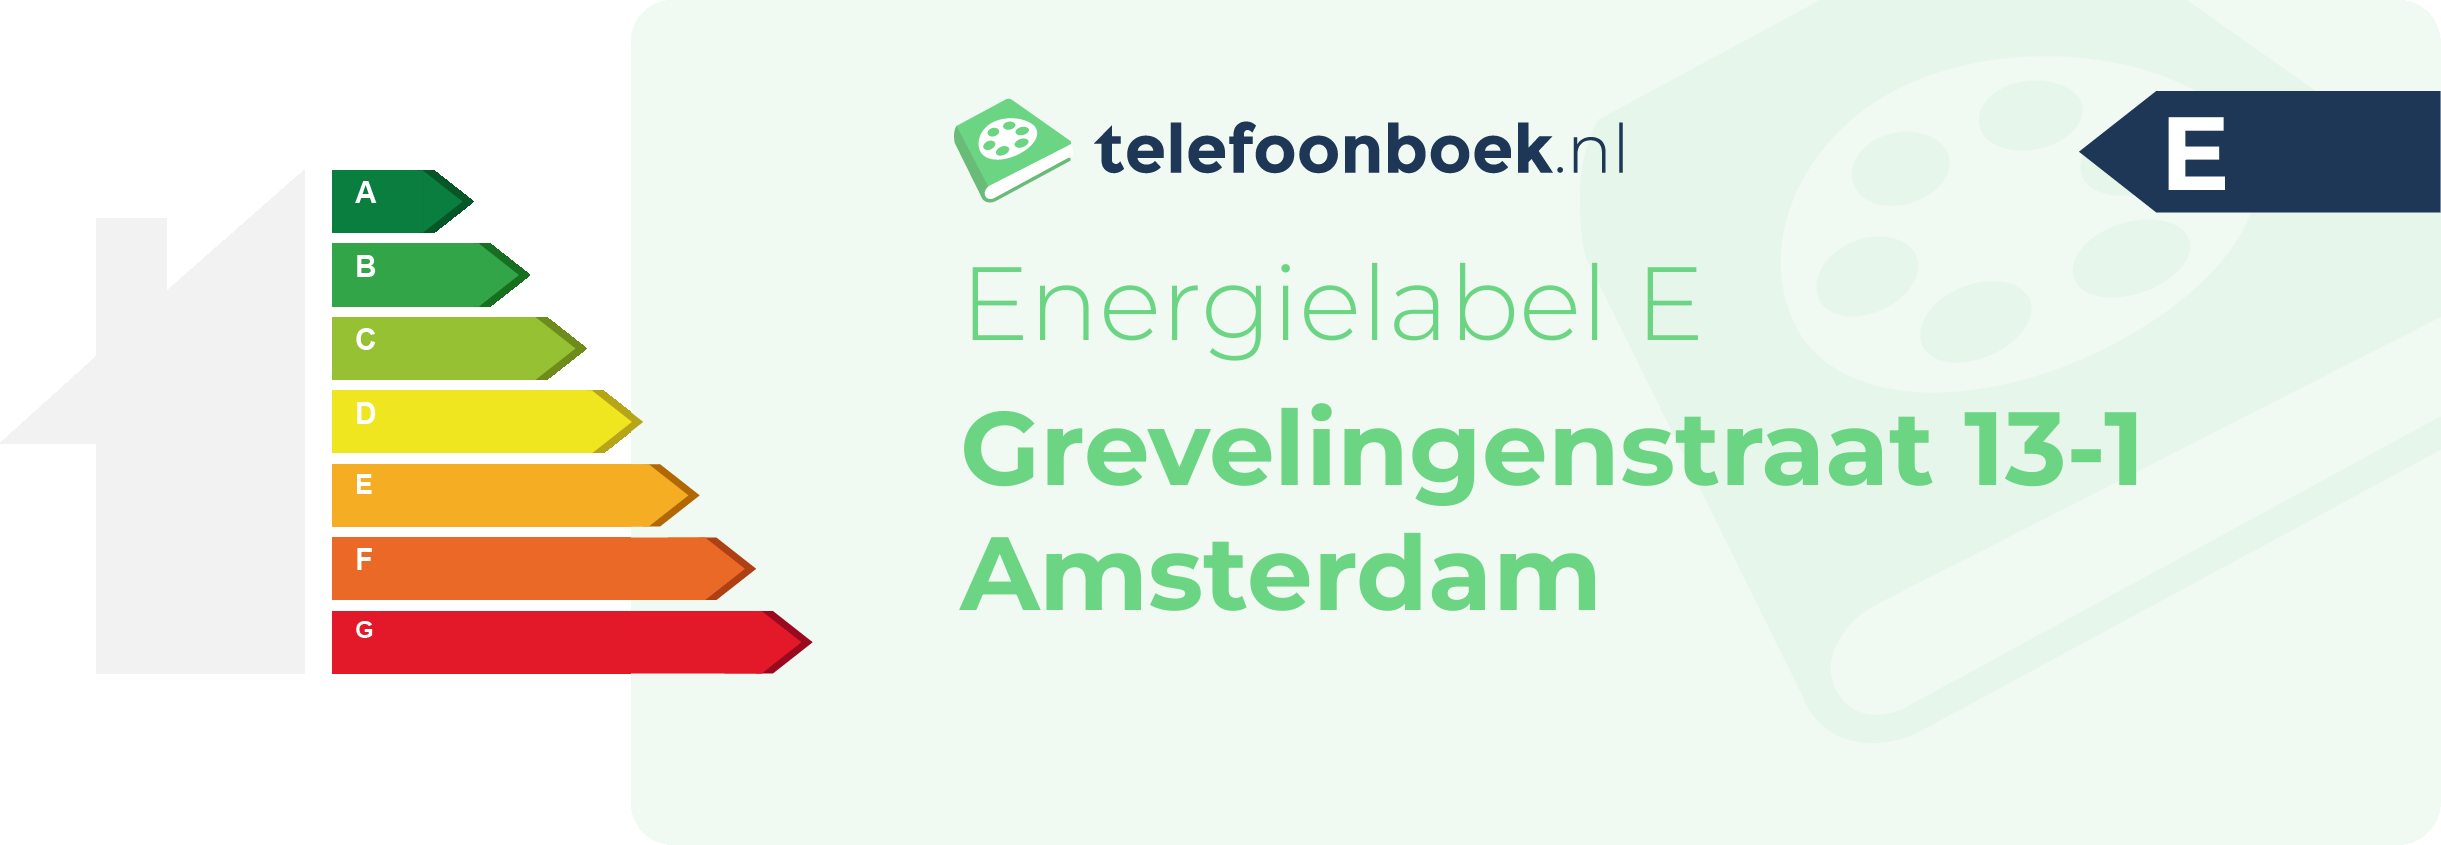 Energielabel Grevelingenstraat 13-1 Amsterdam